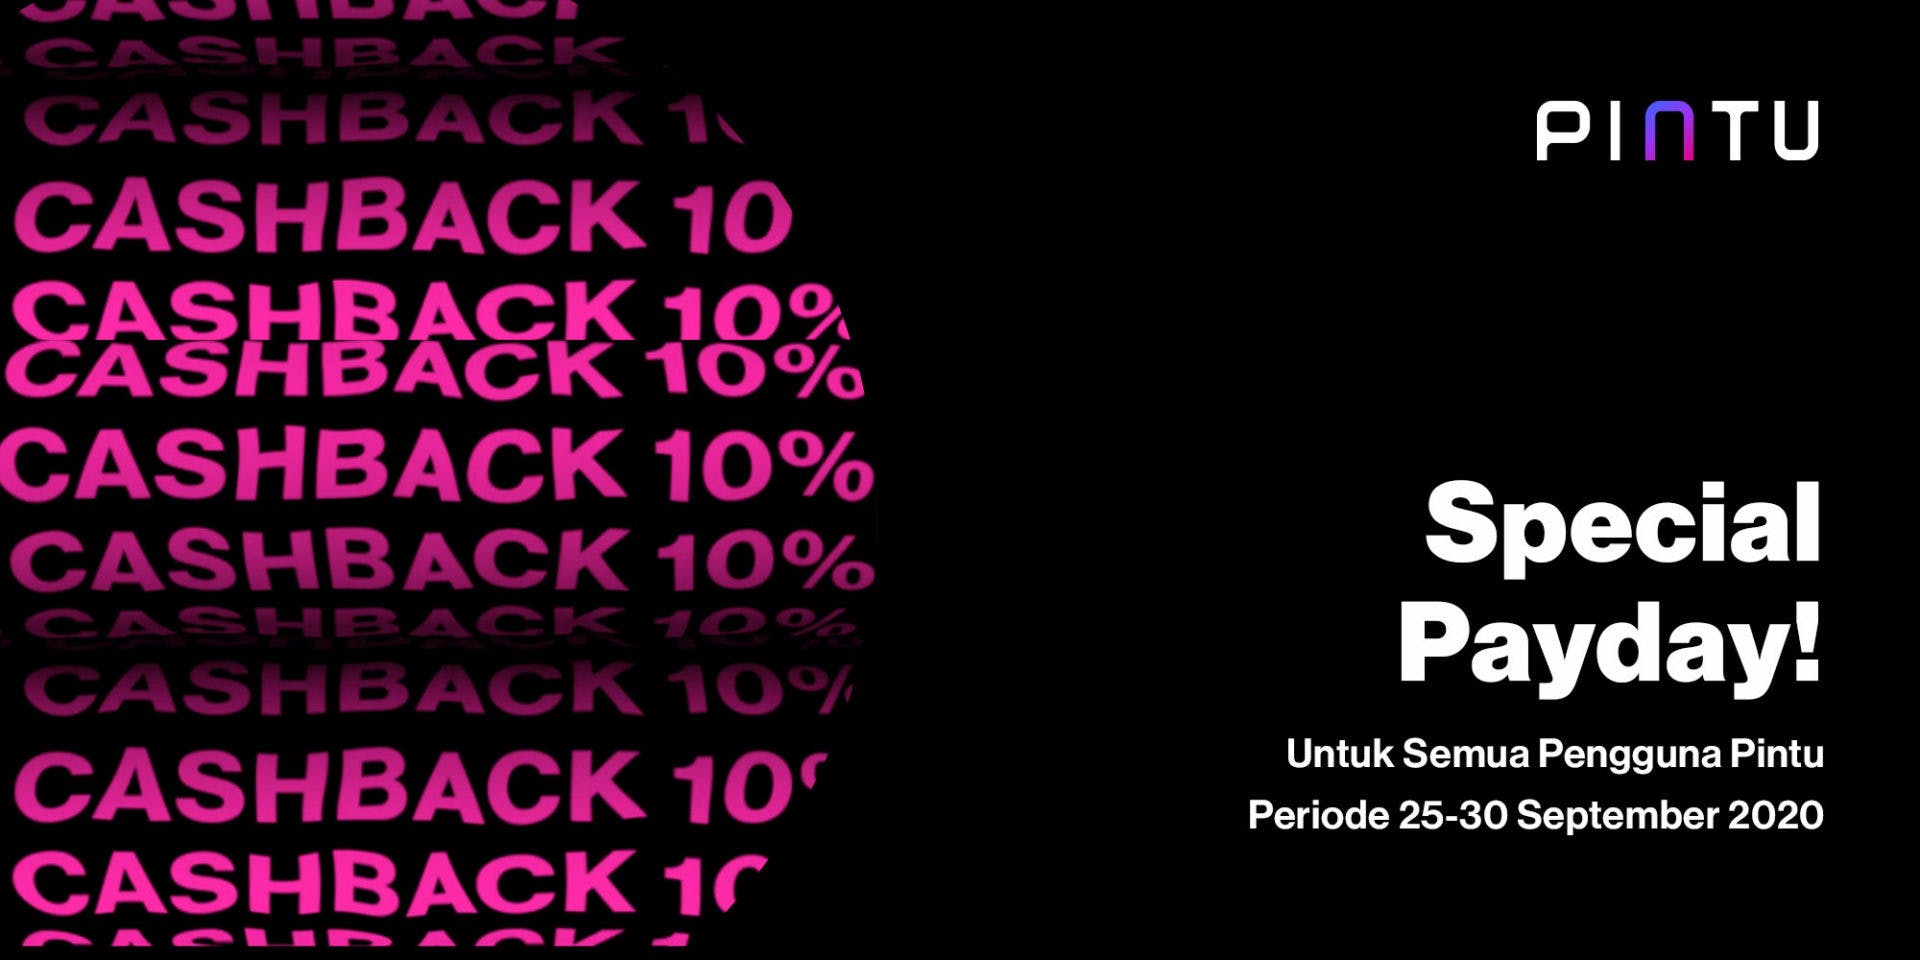 Pengumuman Pemenang Payday Cashback by Pintu (25-30 Oktober 2020)